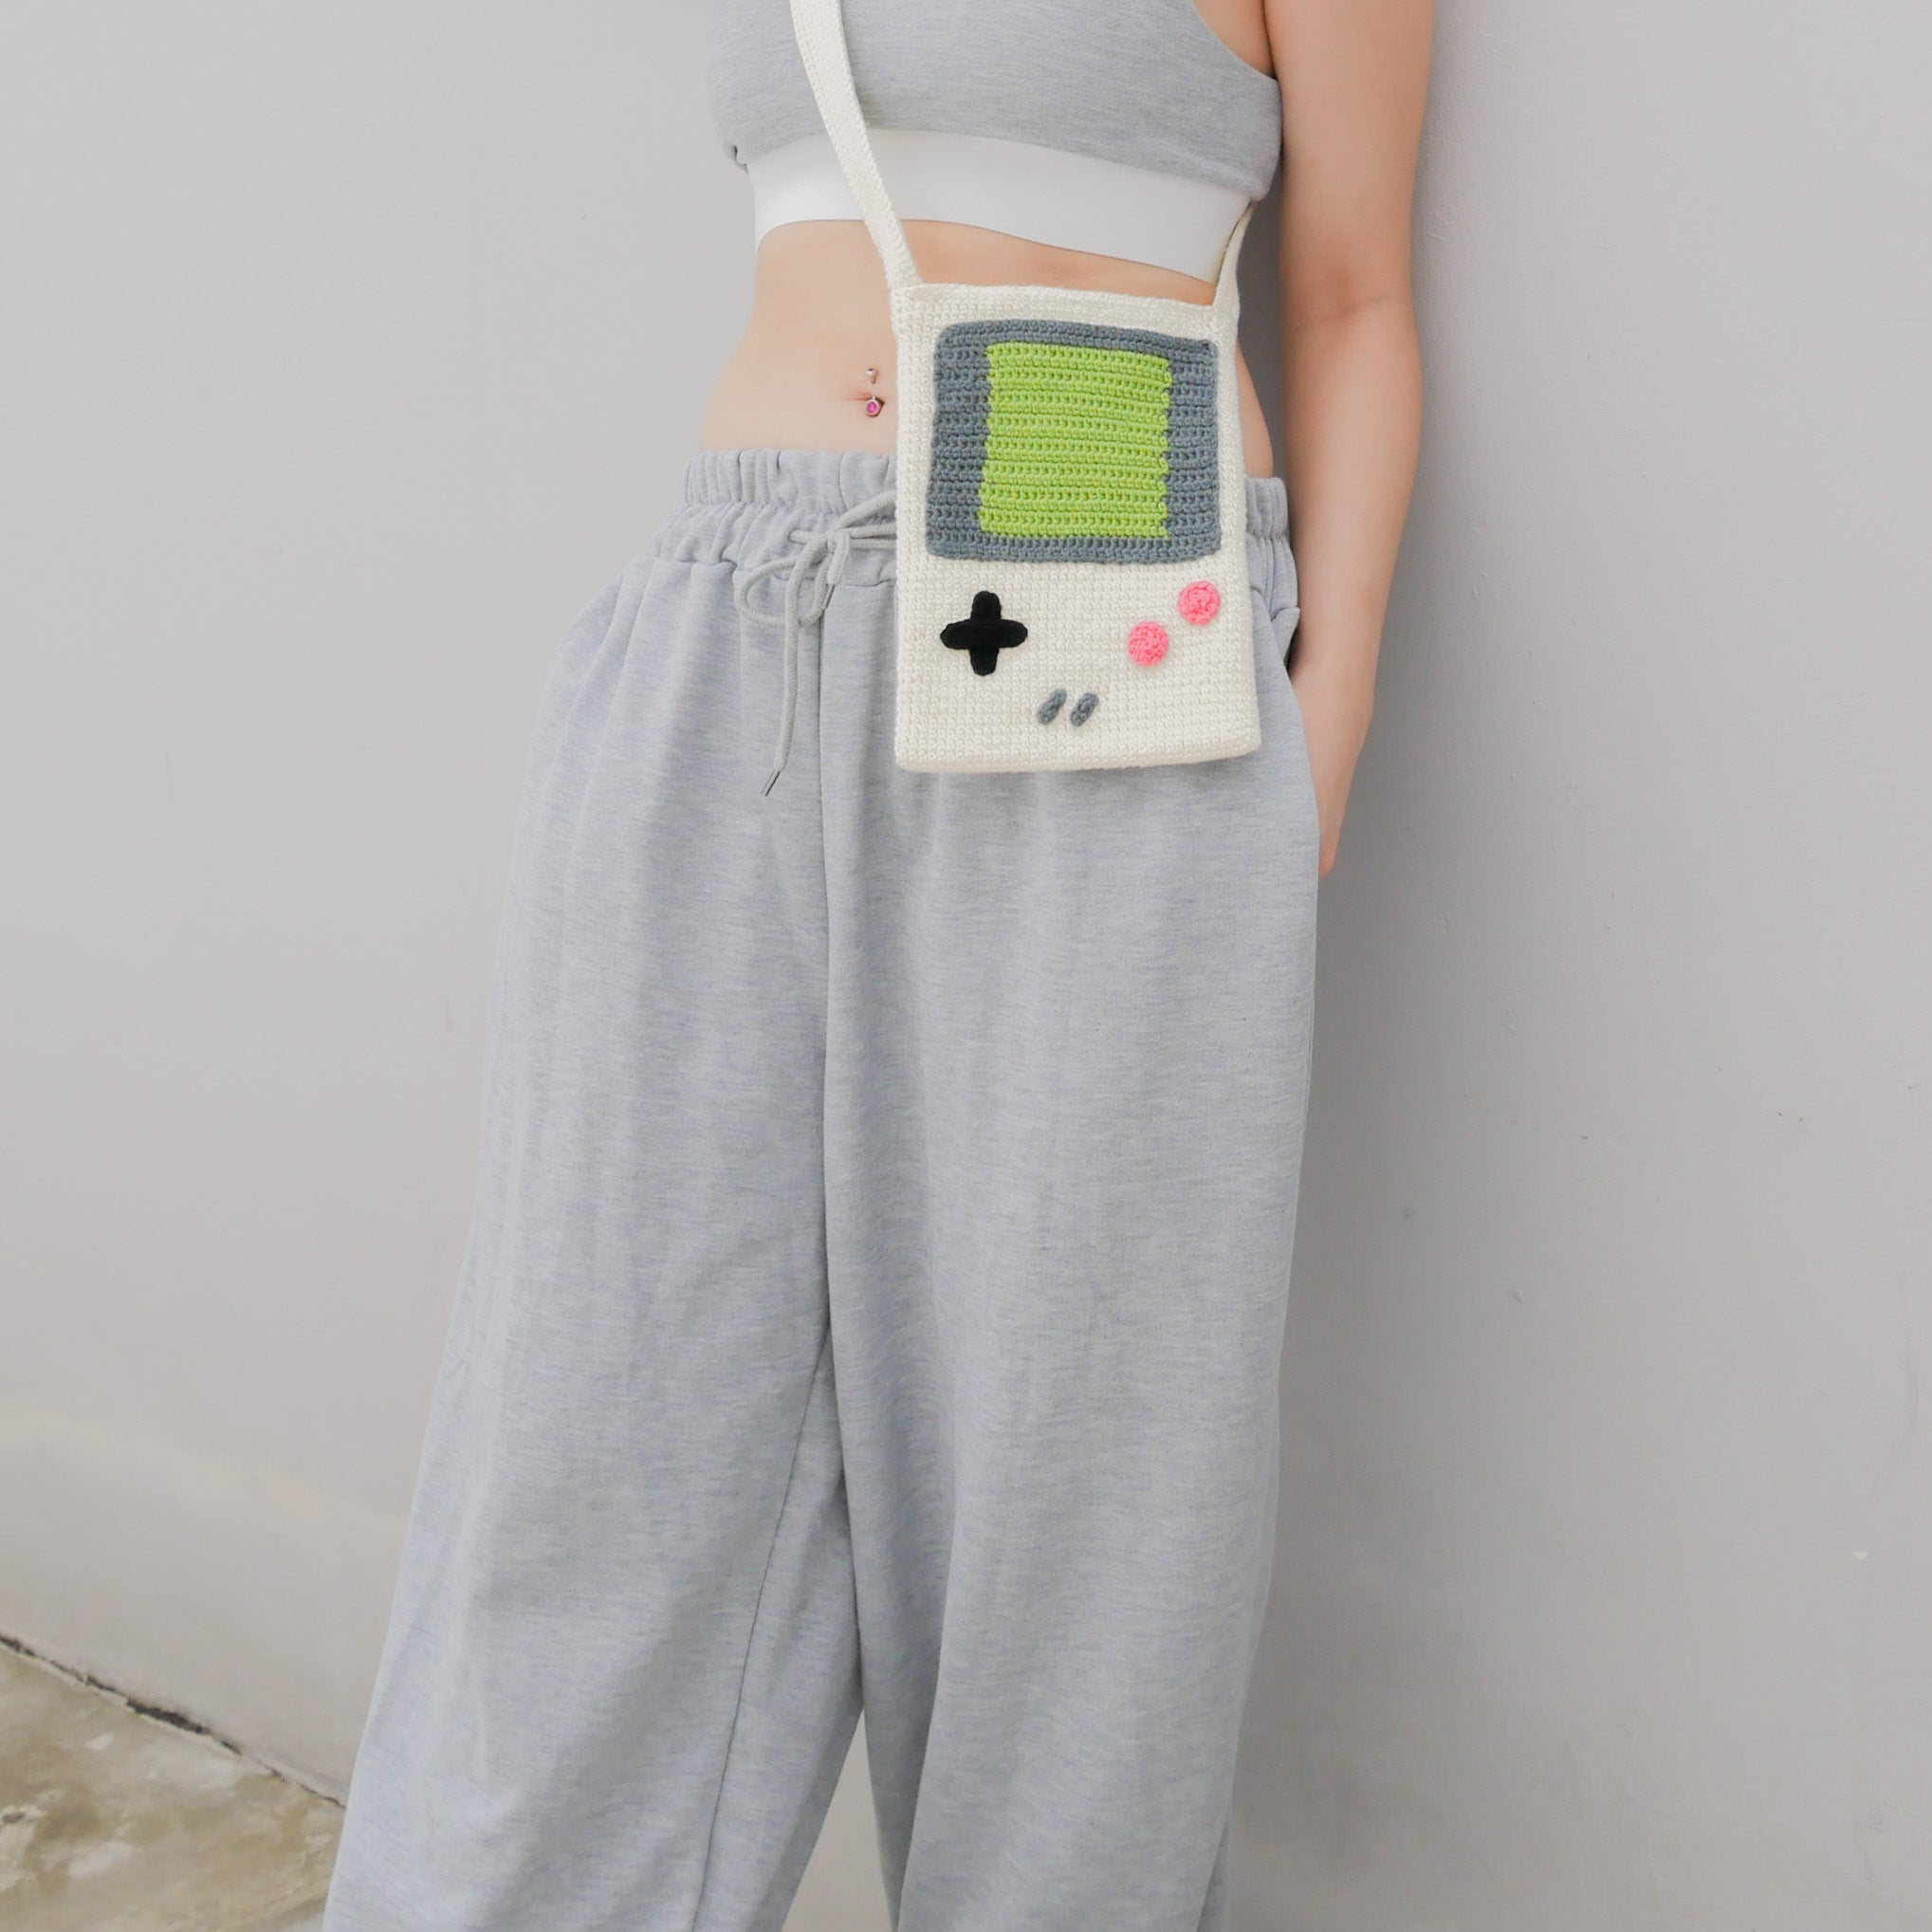 GameBoy Inspired Bag - White